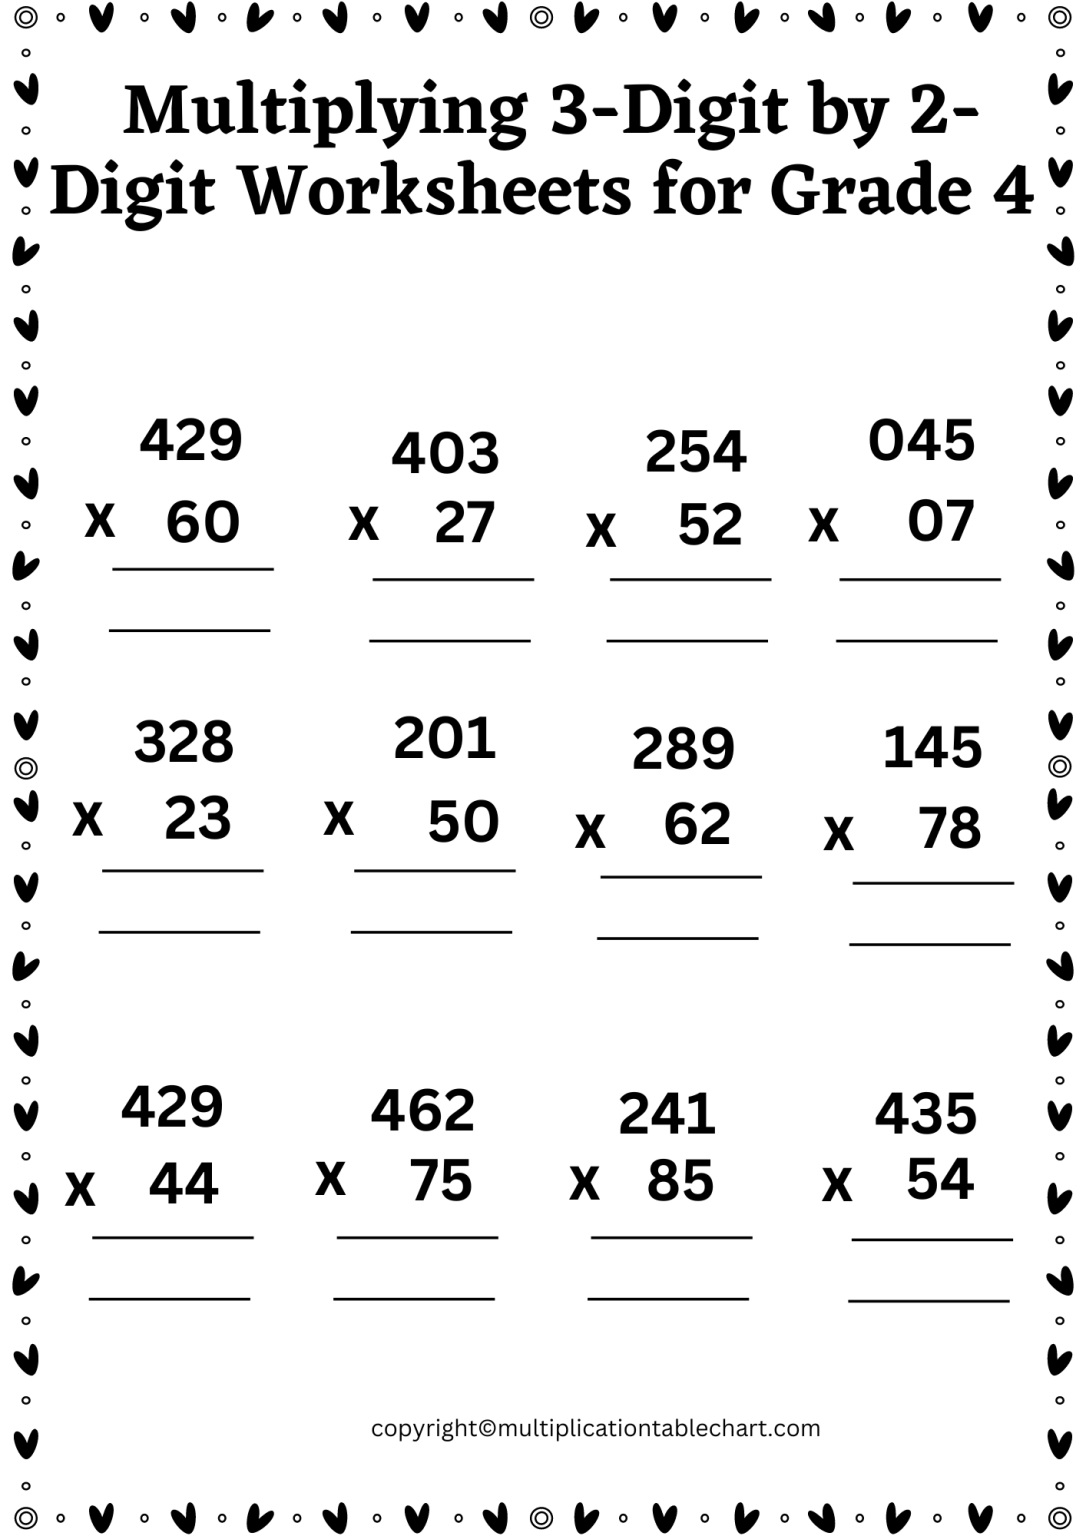 multiply-3-digit-number-by-2-digit-number-worksheet-grade-4